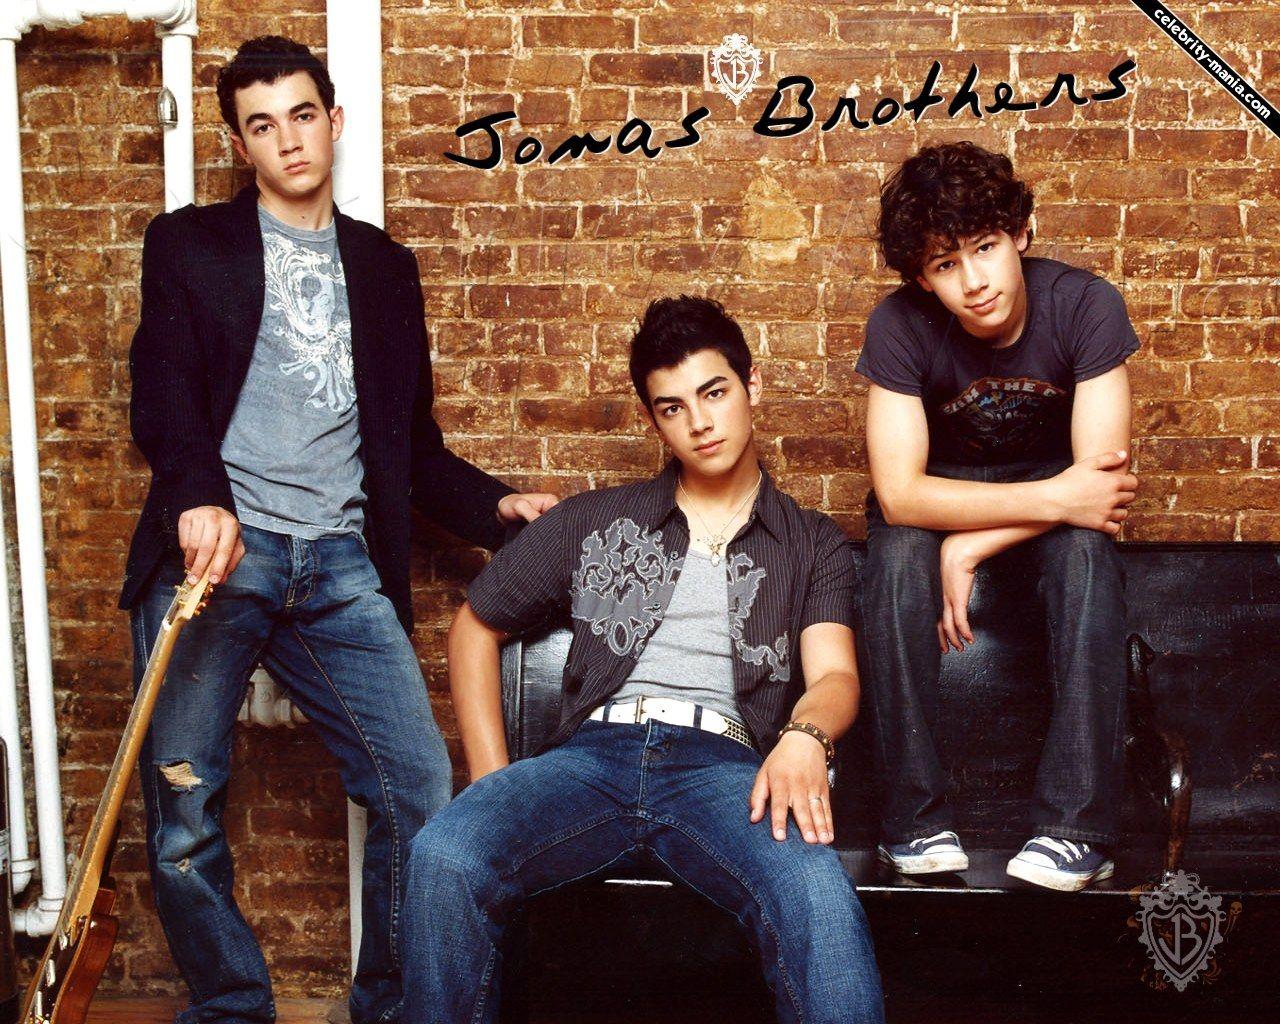 Jonas Brothers Wallpaper Download